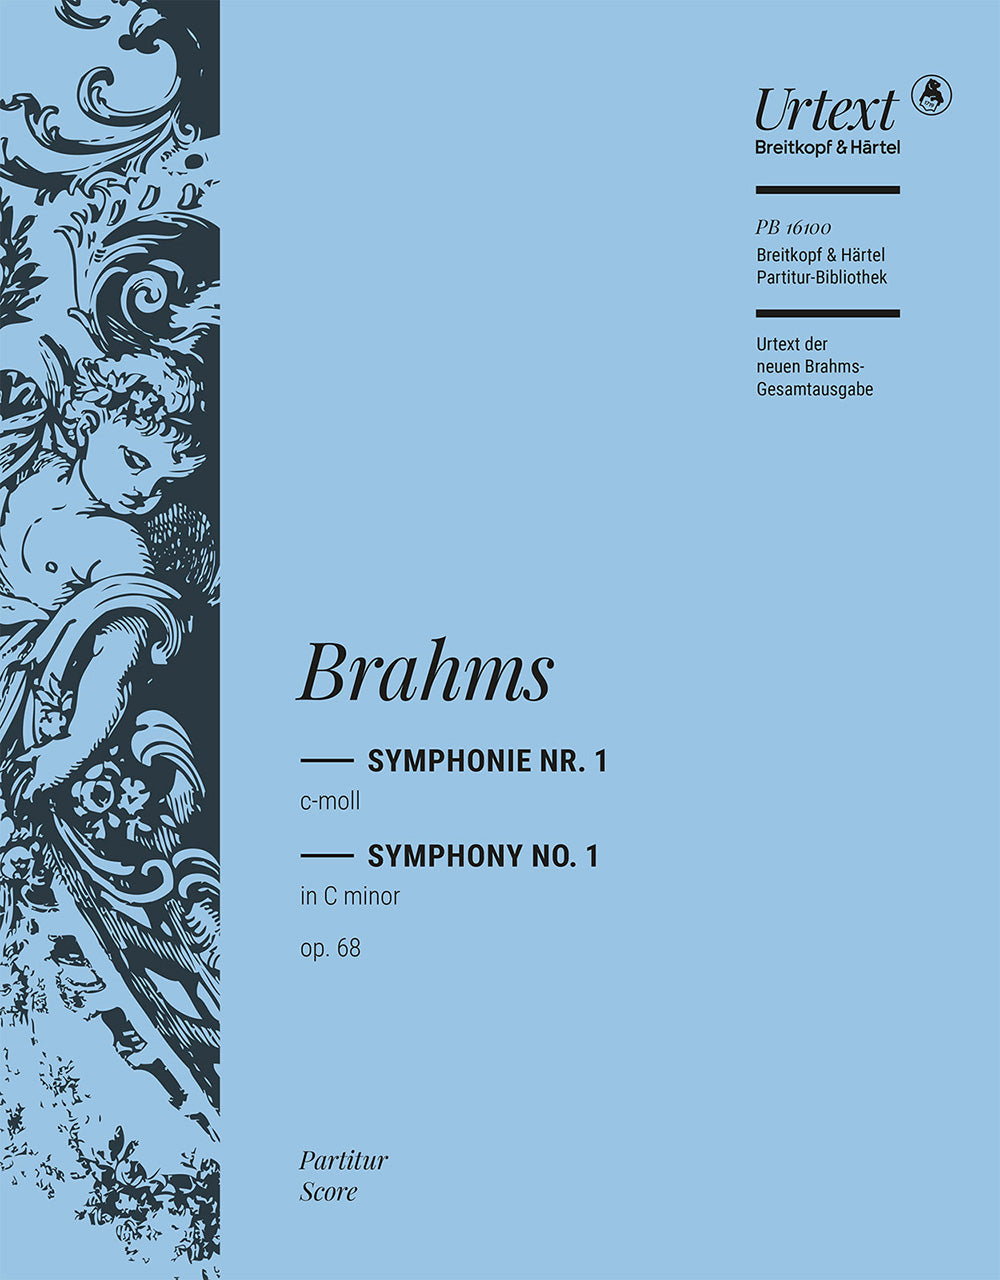 Brahms Symphony No. 1 in C minor Op. 68